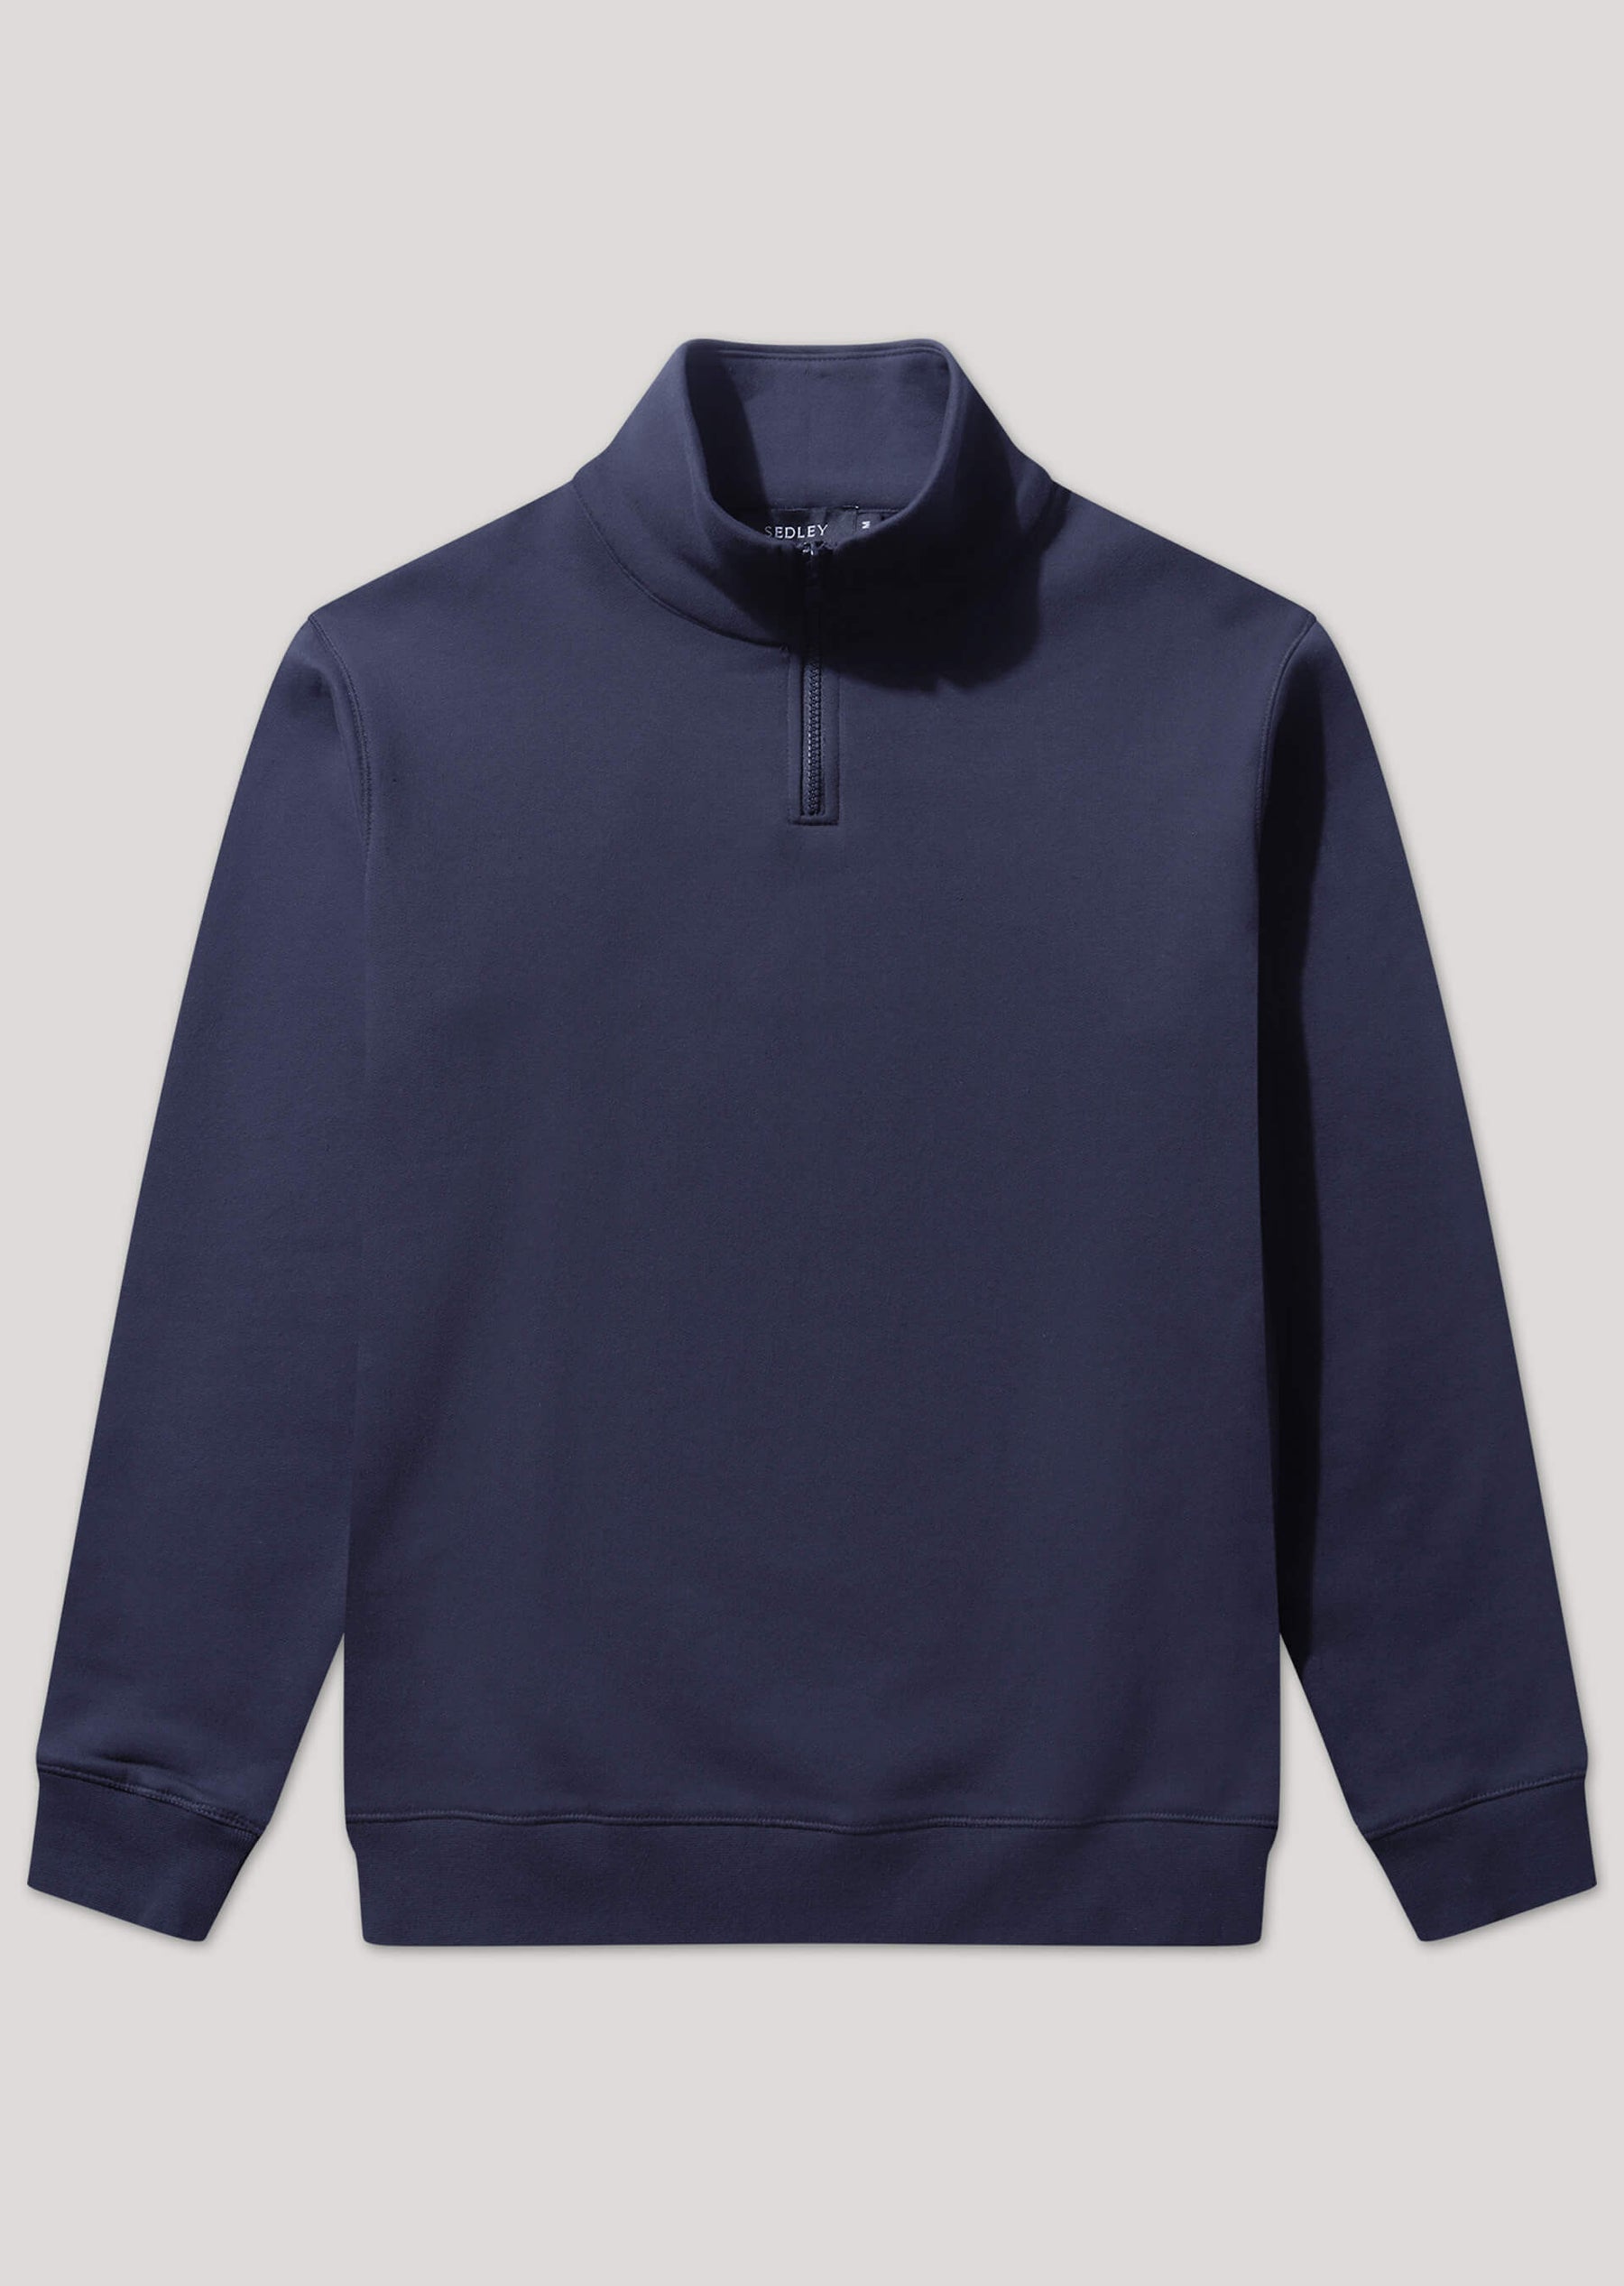 Hampshire Navy Zip Up Sweatshirt